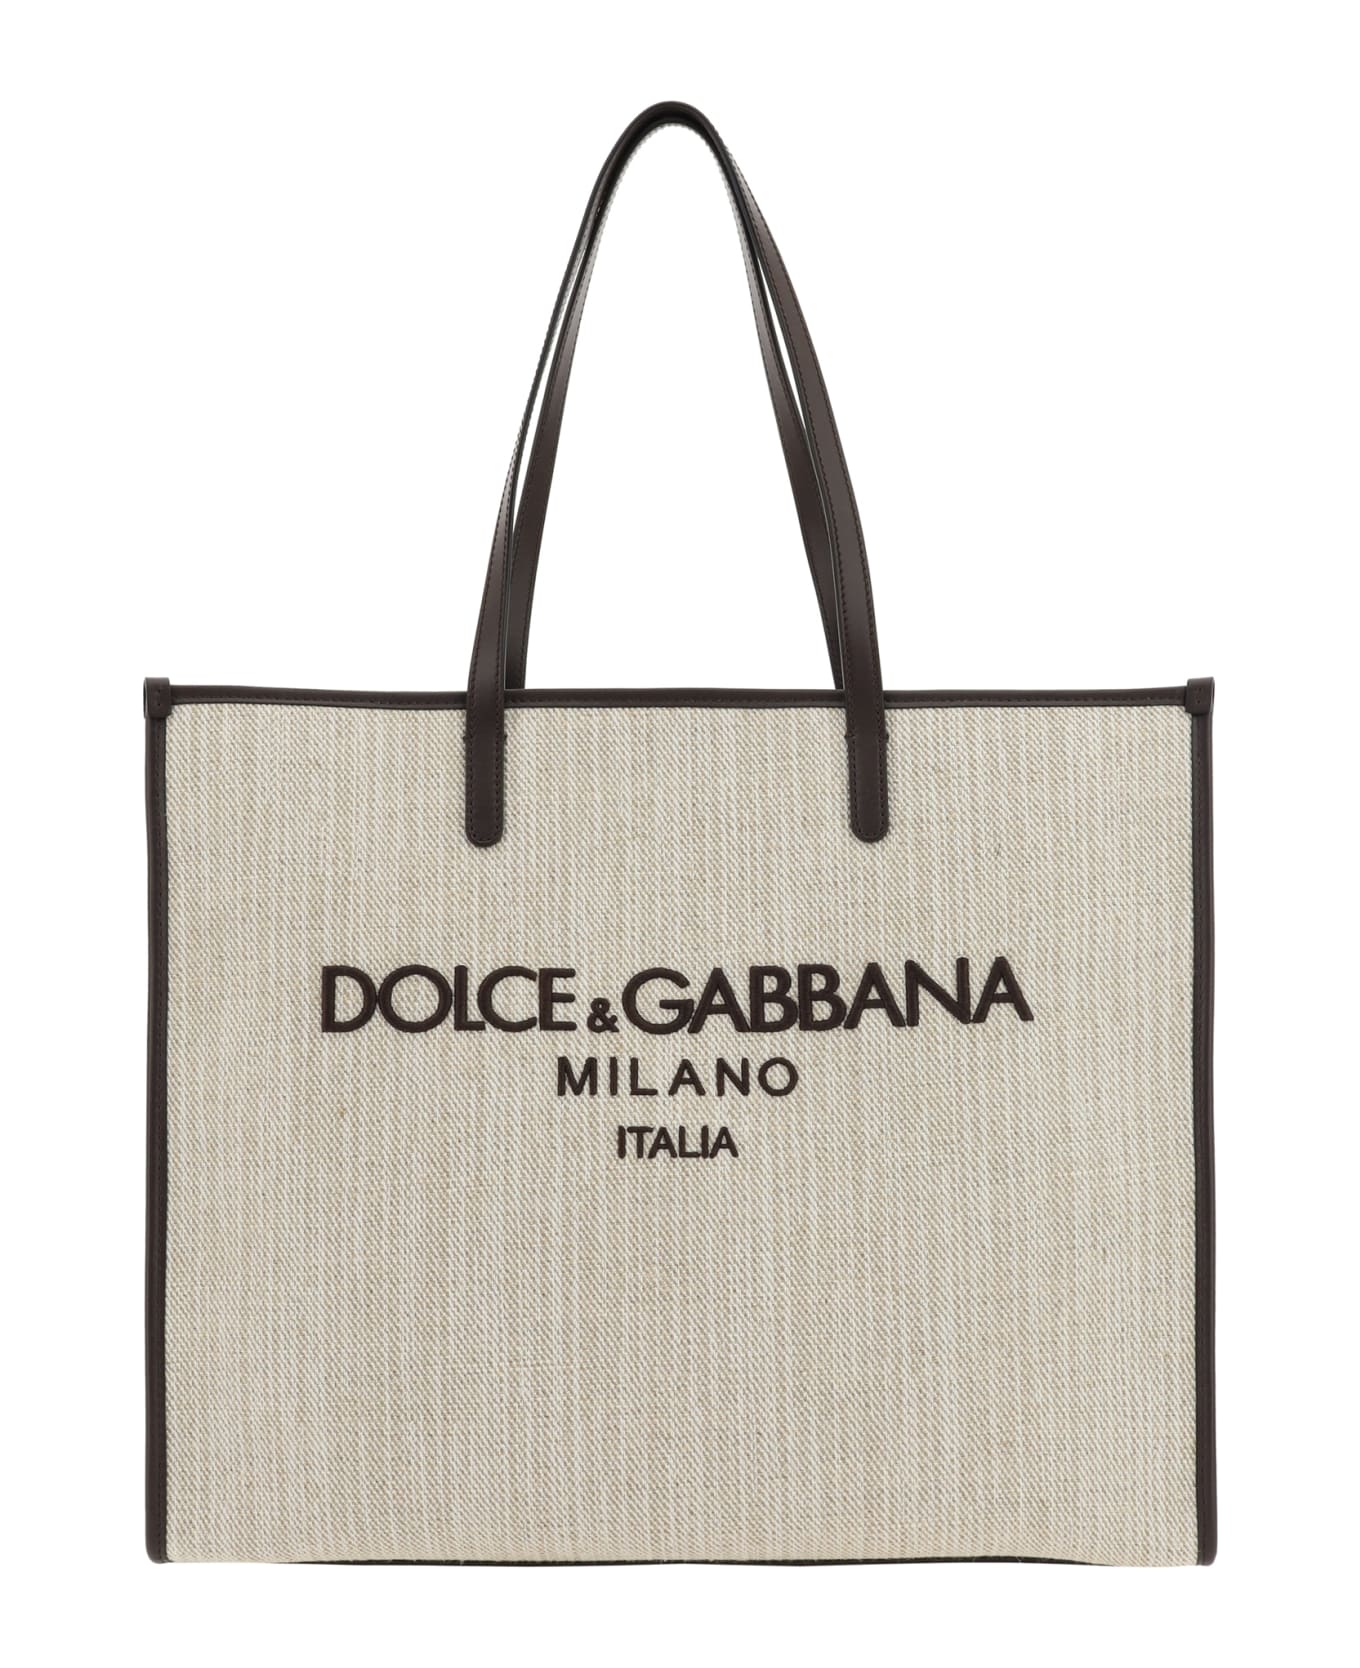 Dolce & Gabbana Shopping Bag - Sabbia